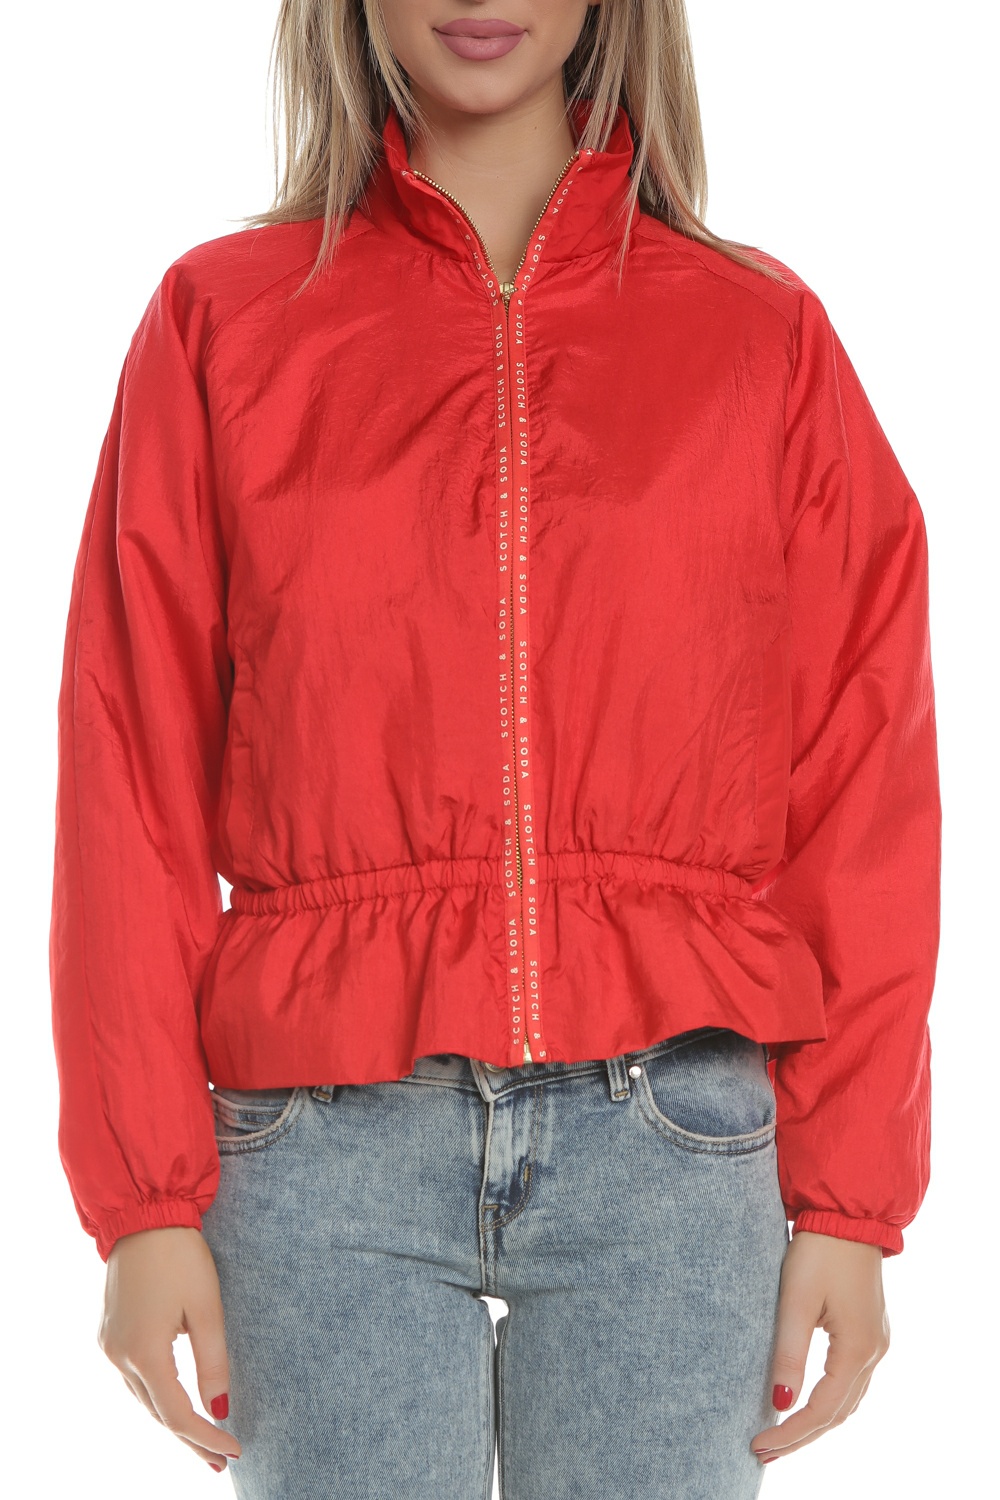 SCOTCH & SODA SCOTCH & SODA - Γυναικείο jacket SCOTCH & SODA κόκκινο